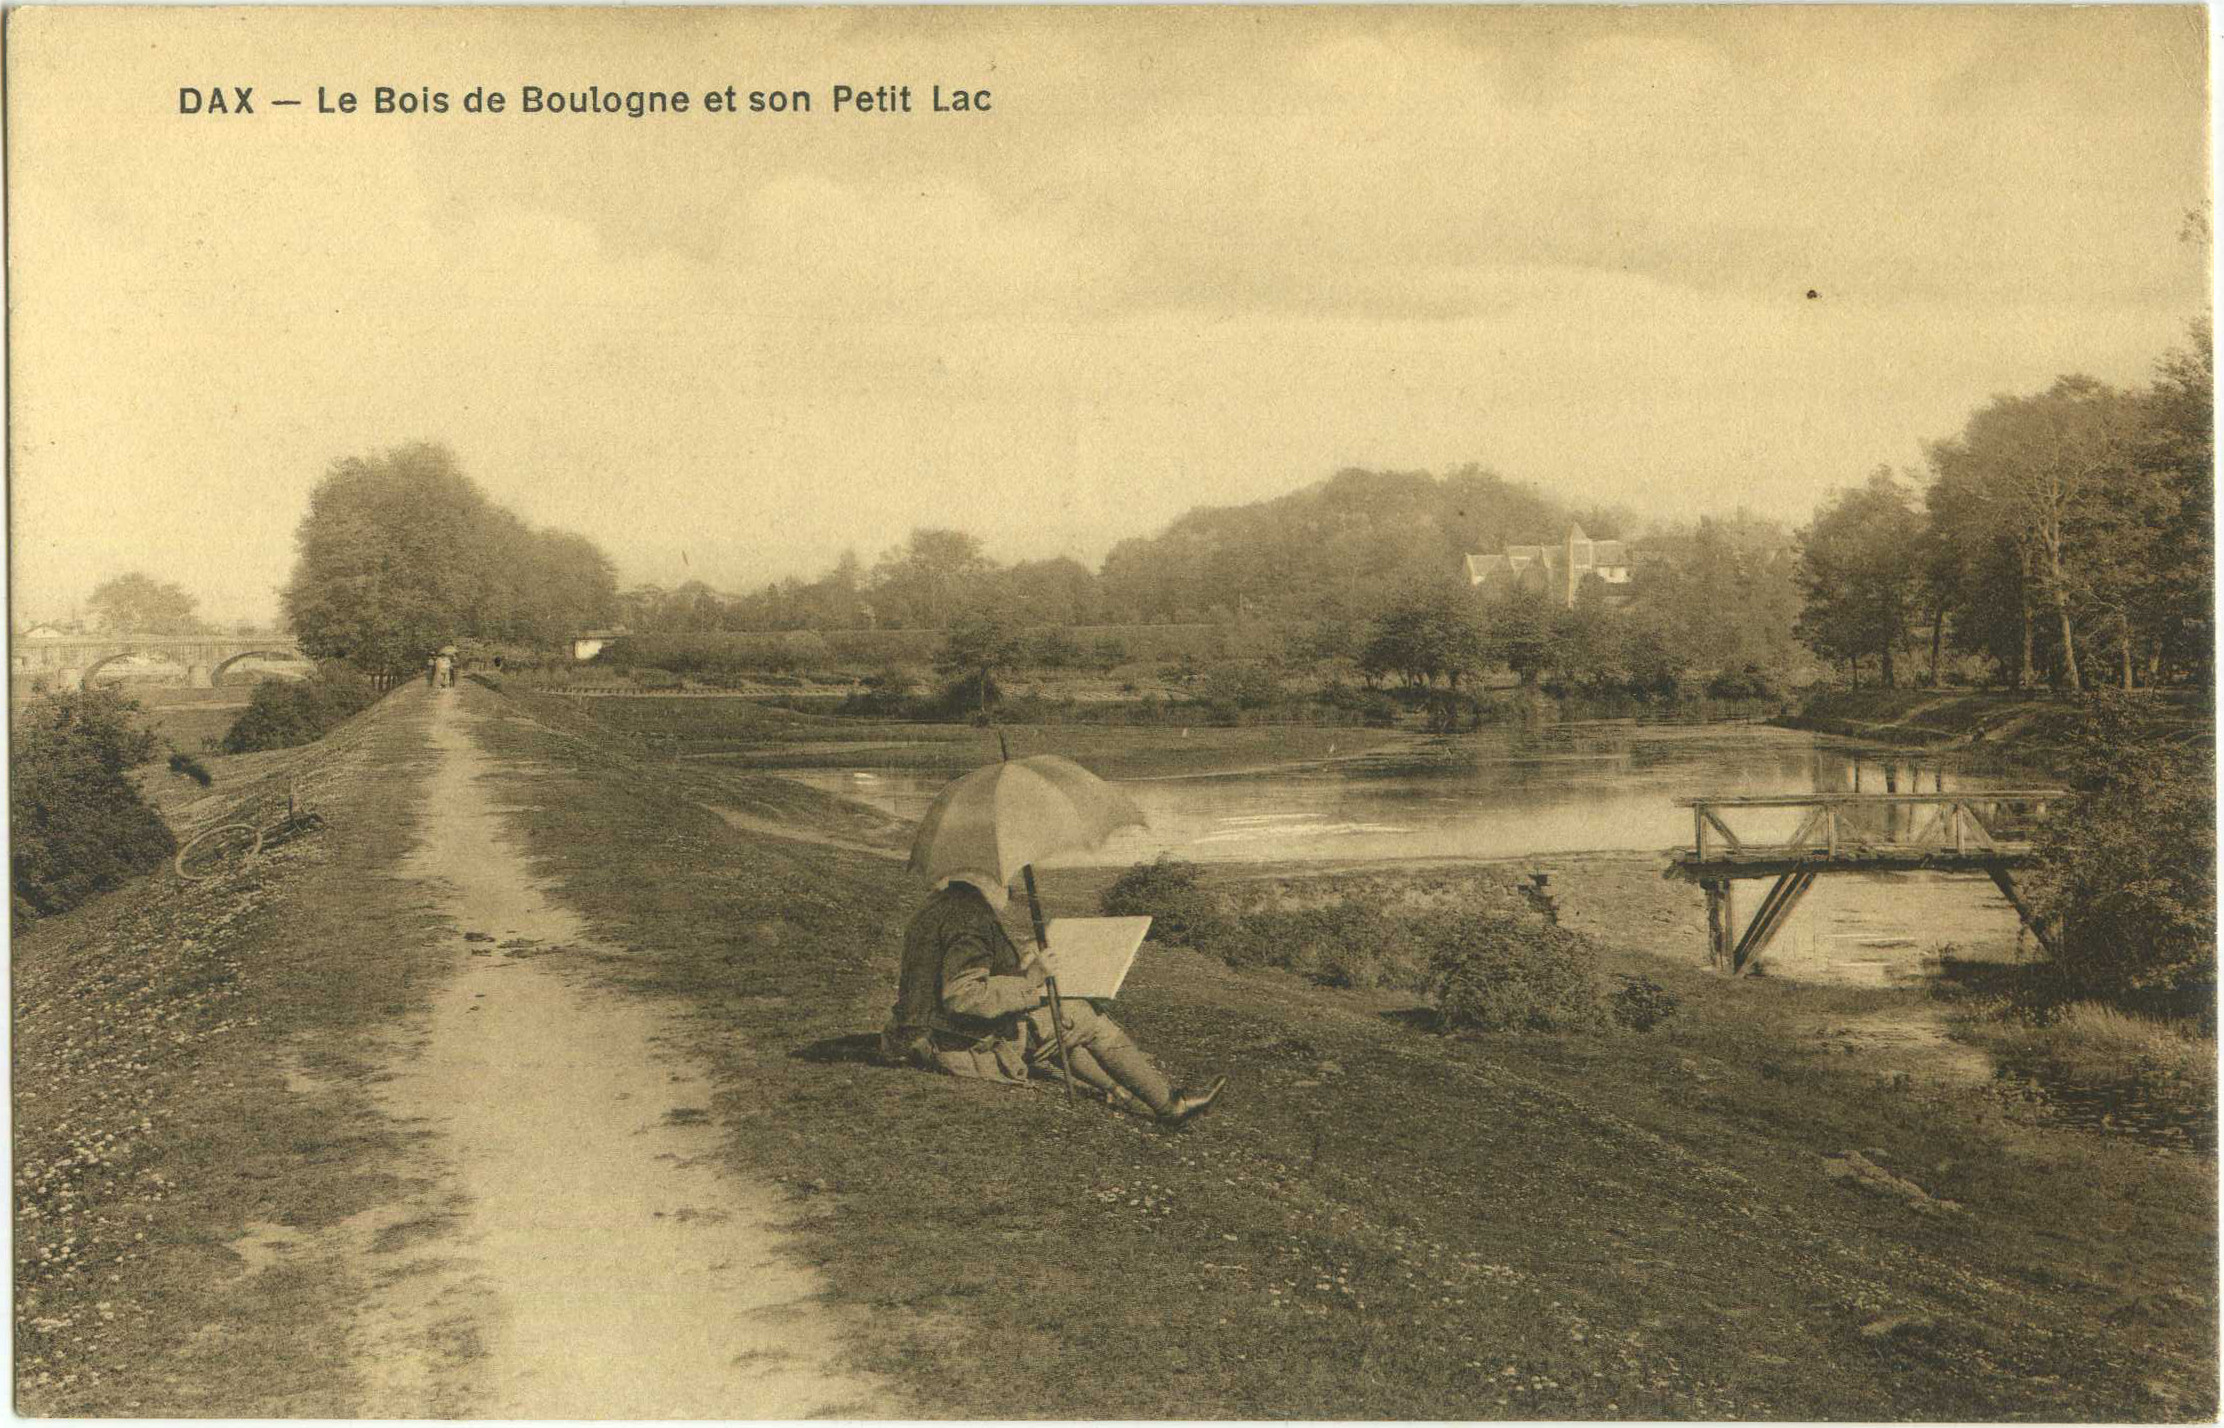 Dax - Le Bois de Boulogne et son Petit Lac